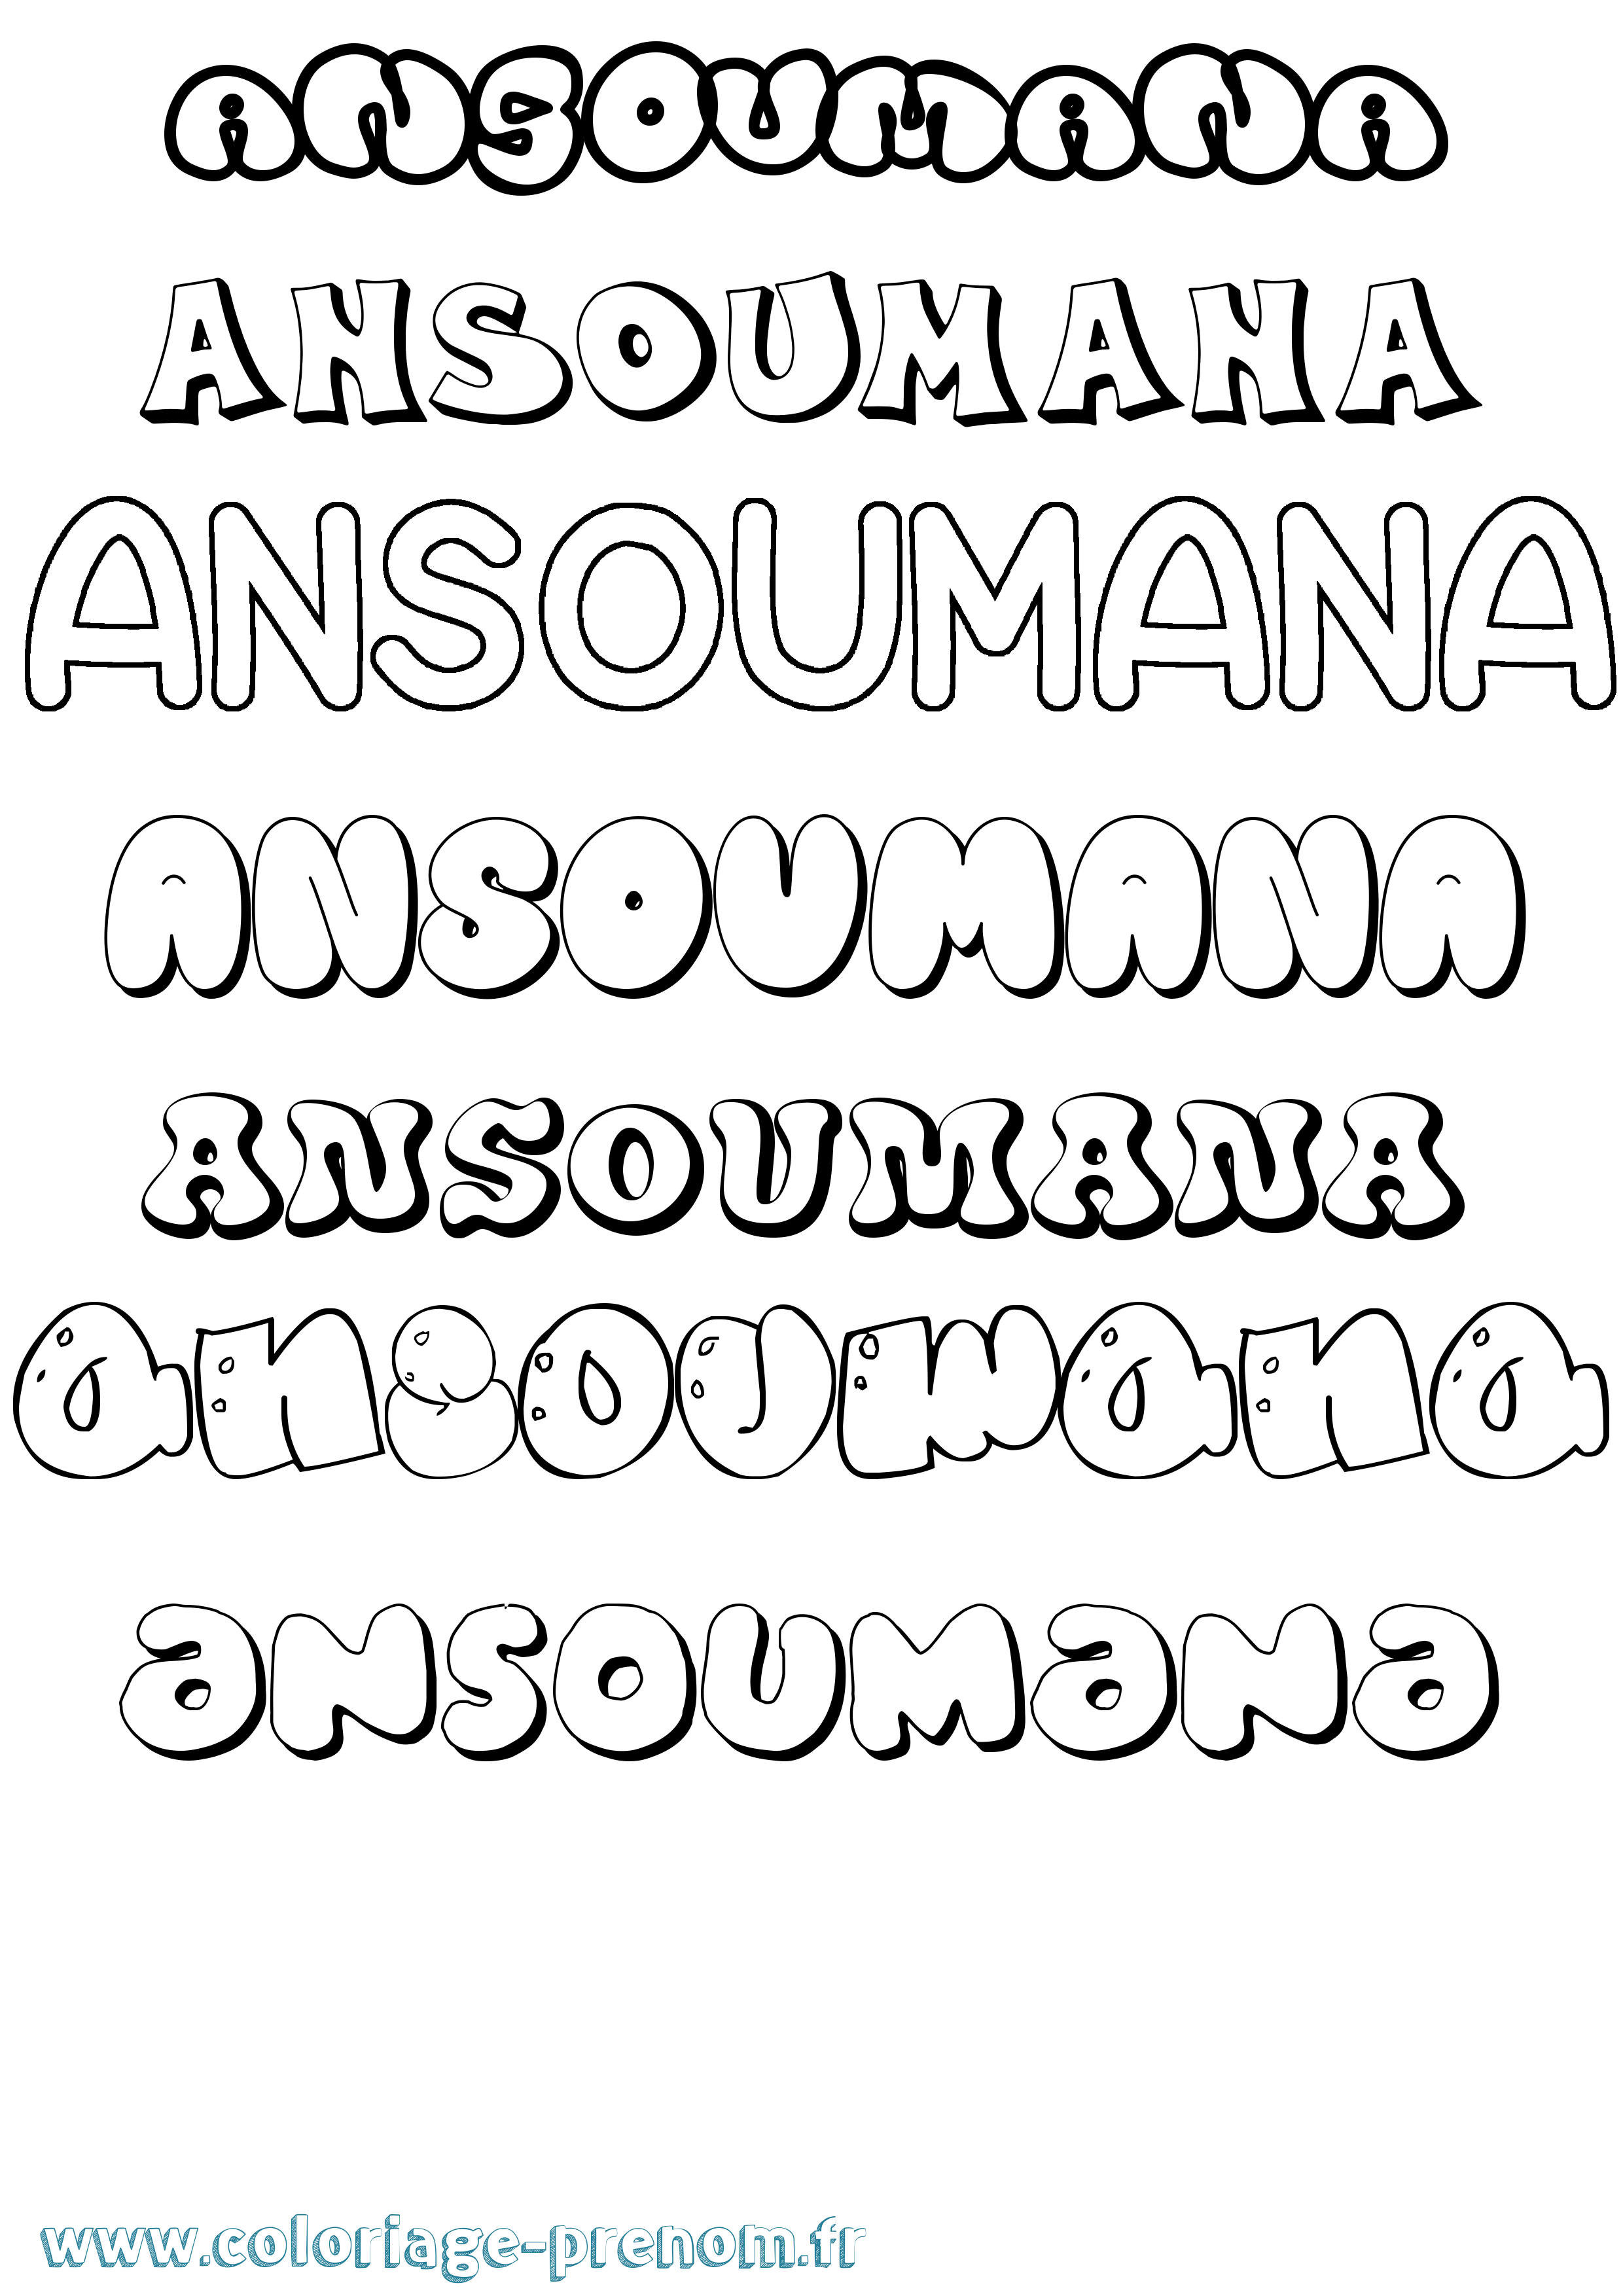 Coloriage prénom Ansoumana Bubble